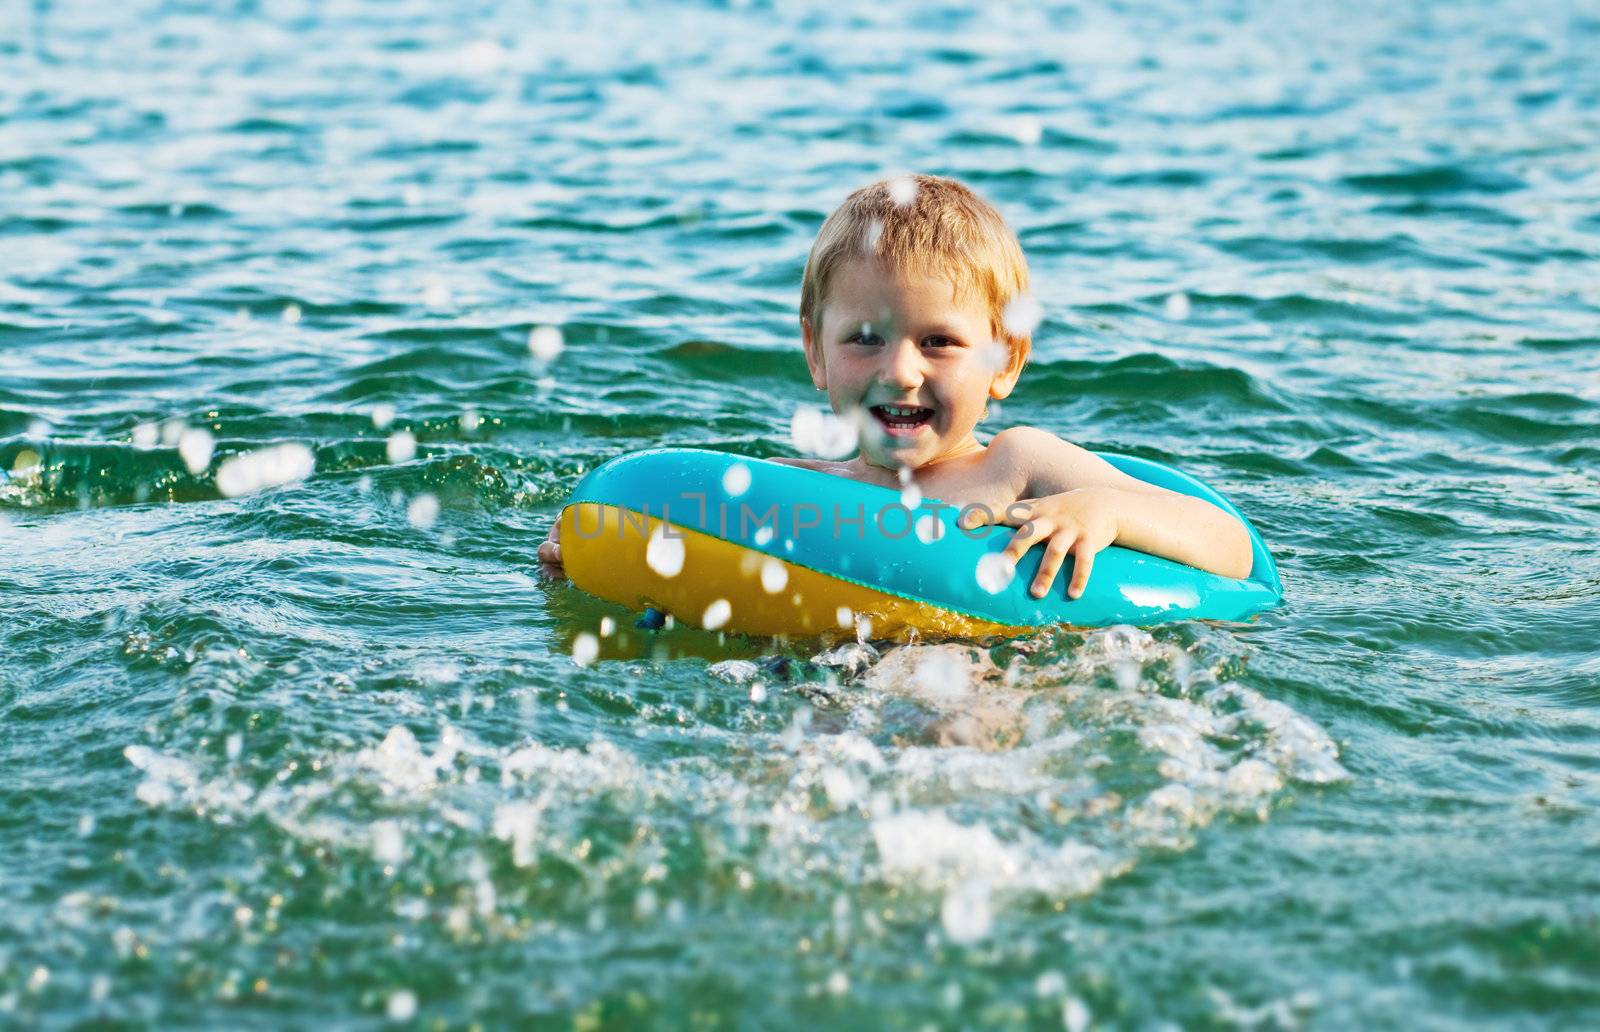 Little boy having fun in the water